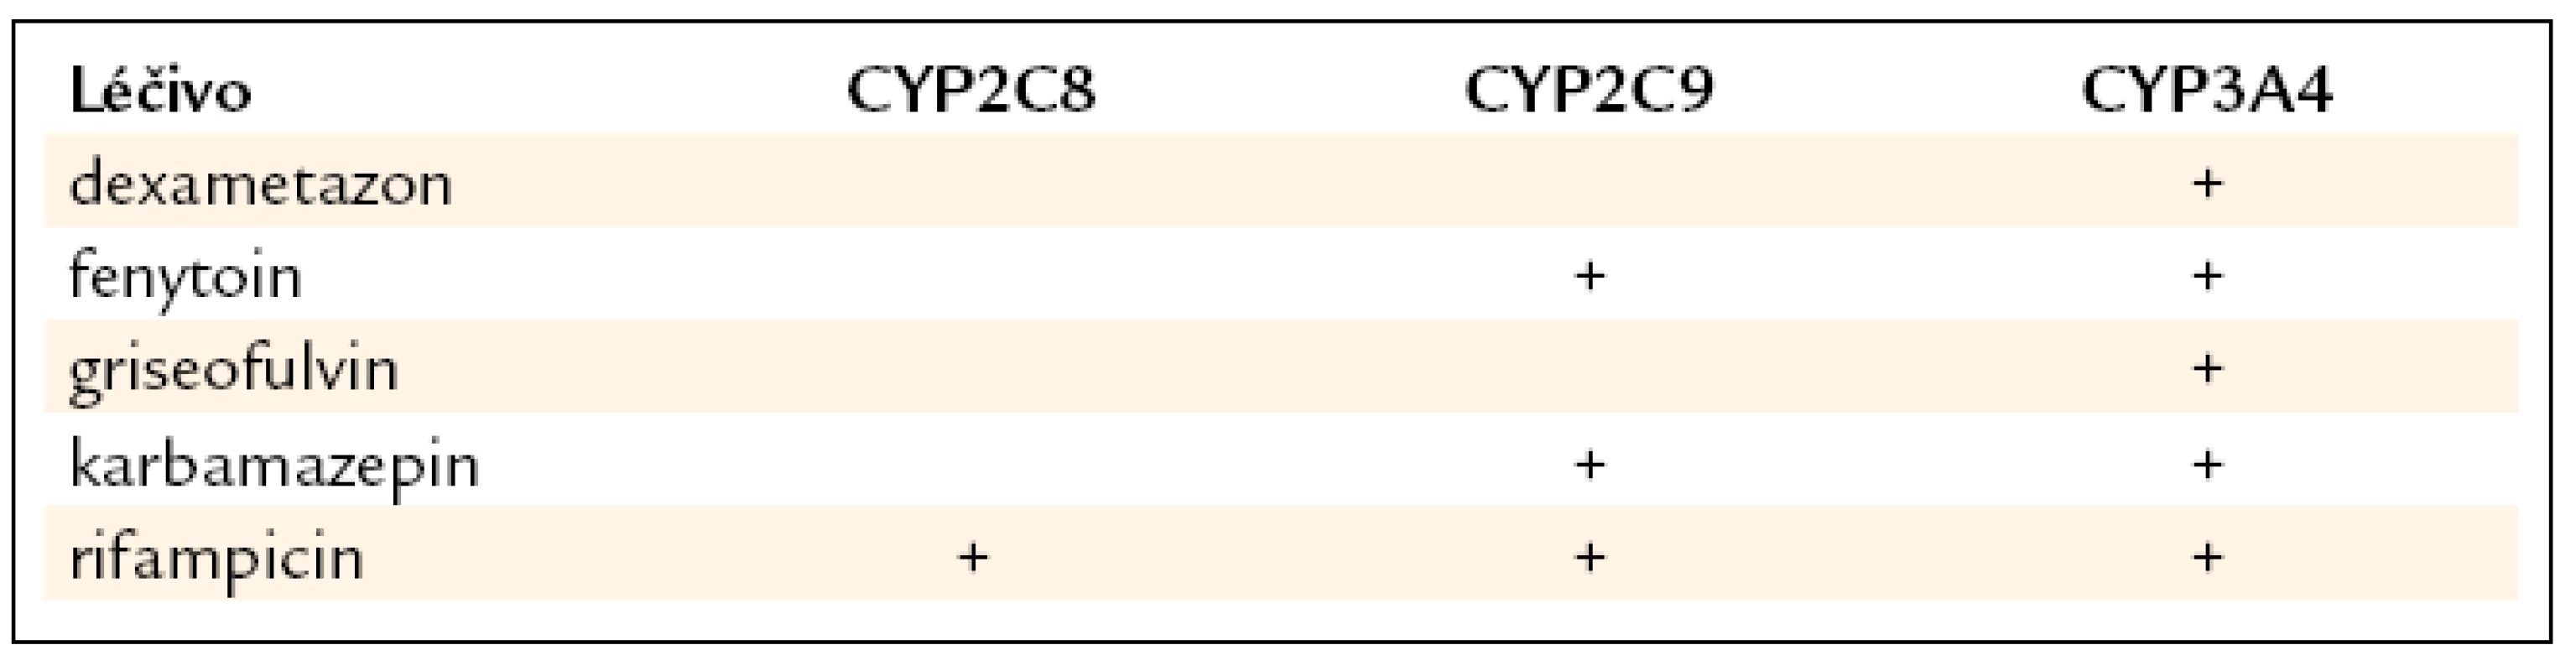 Přehled hlavních induktorů izoforem CYP 450 významných pro metabolizaci antidiabetik [9,22,23].